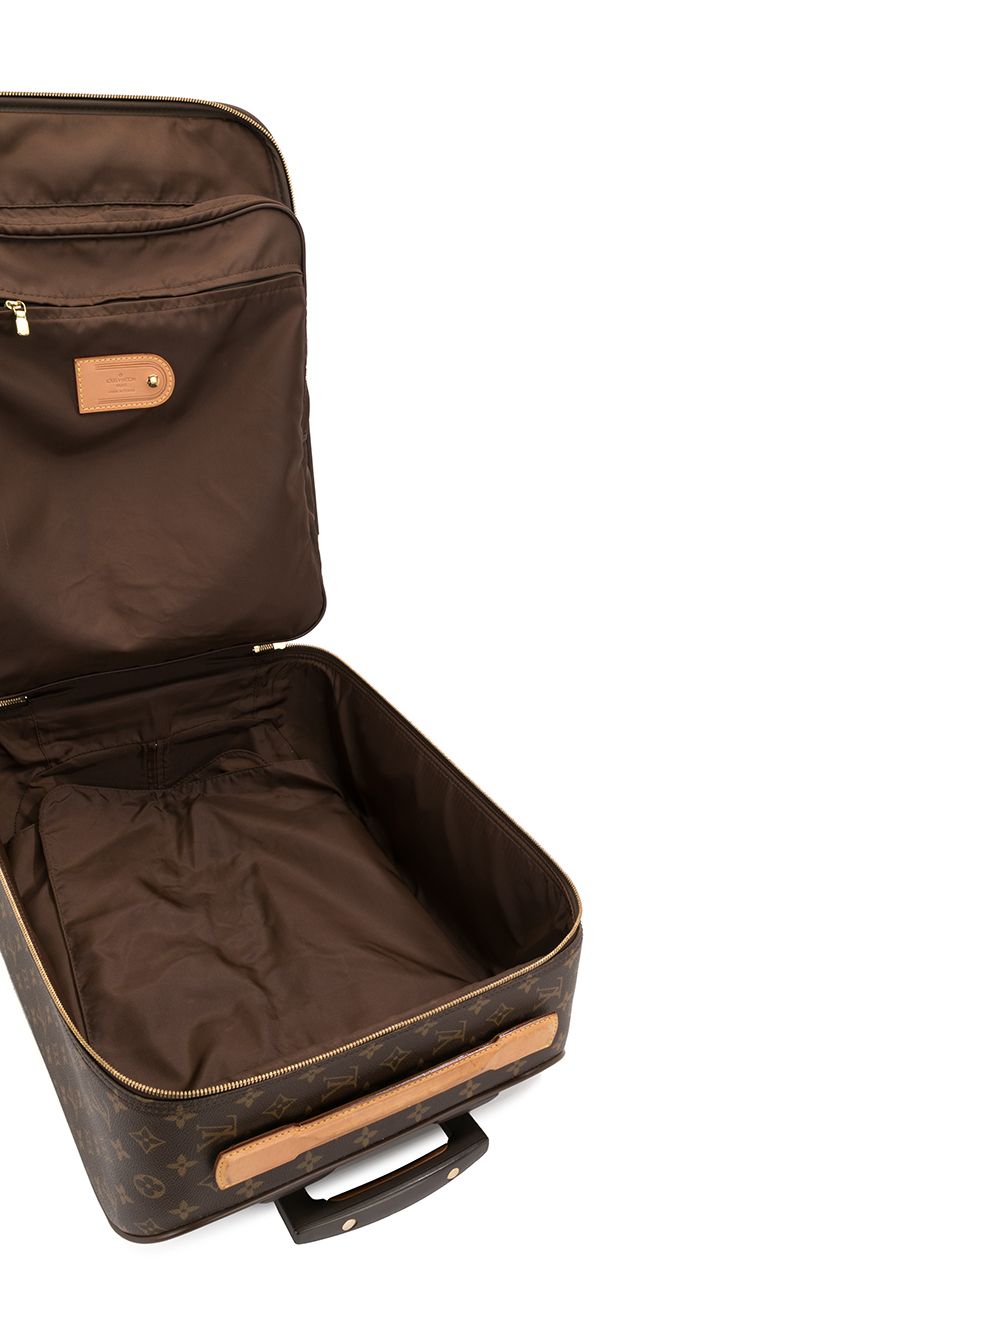 HealthdesignShops, Louis Vuitton Pégase Suitcase 377782